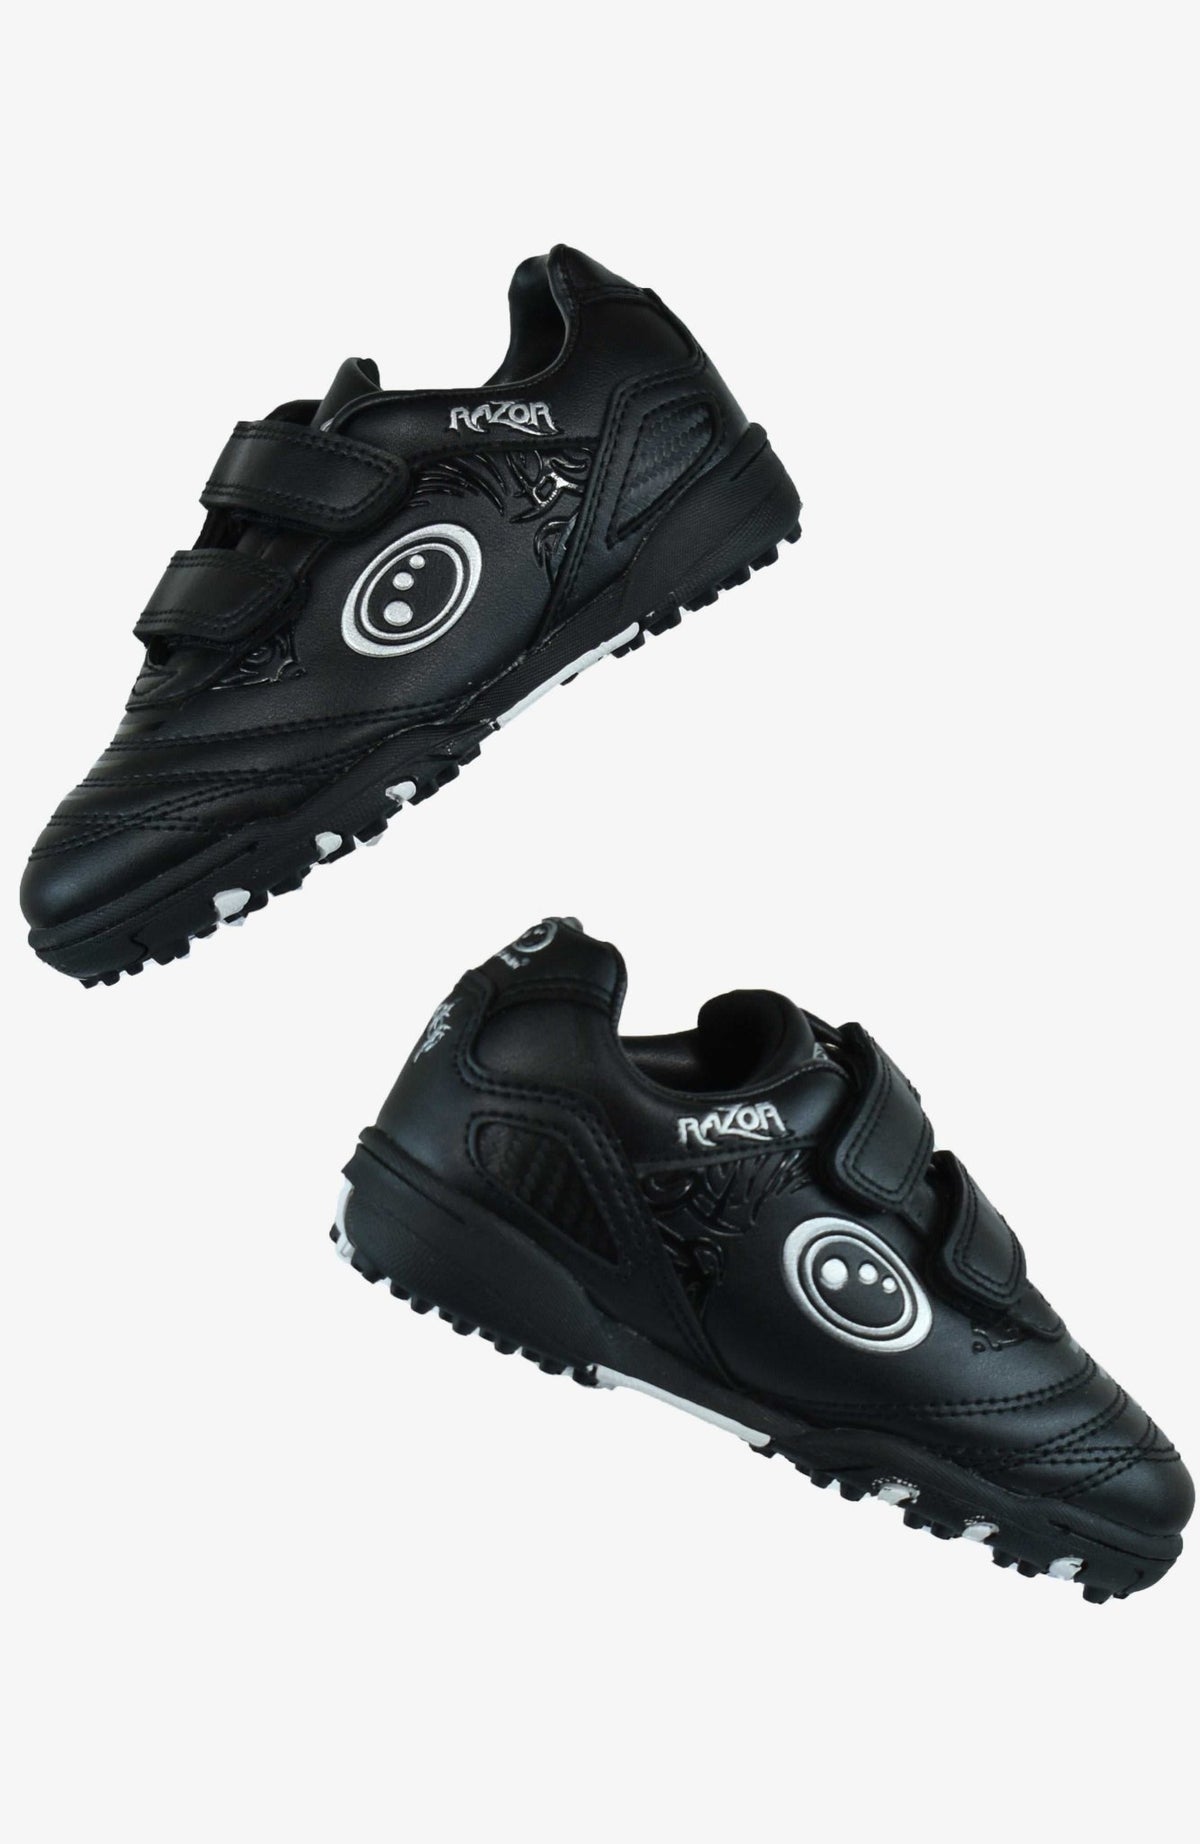 Razor Astro Trainer Black / Silver Football Boots - Optimum